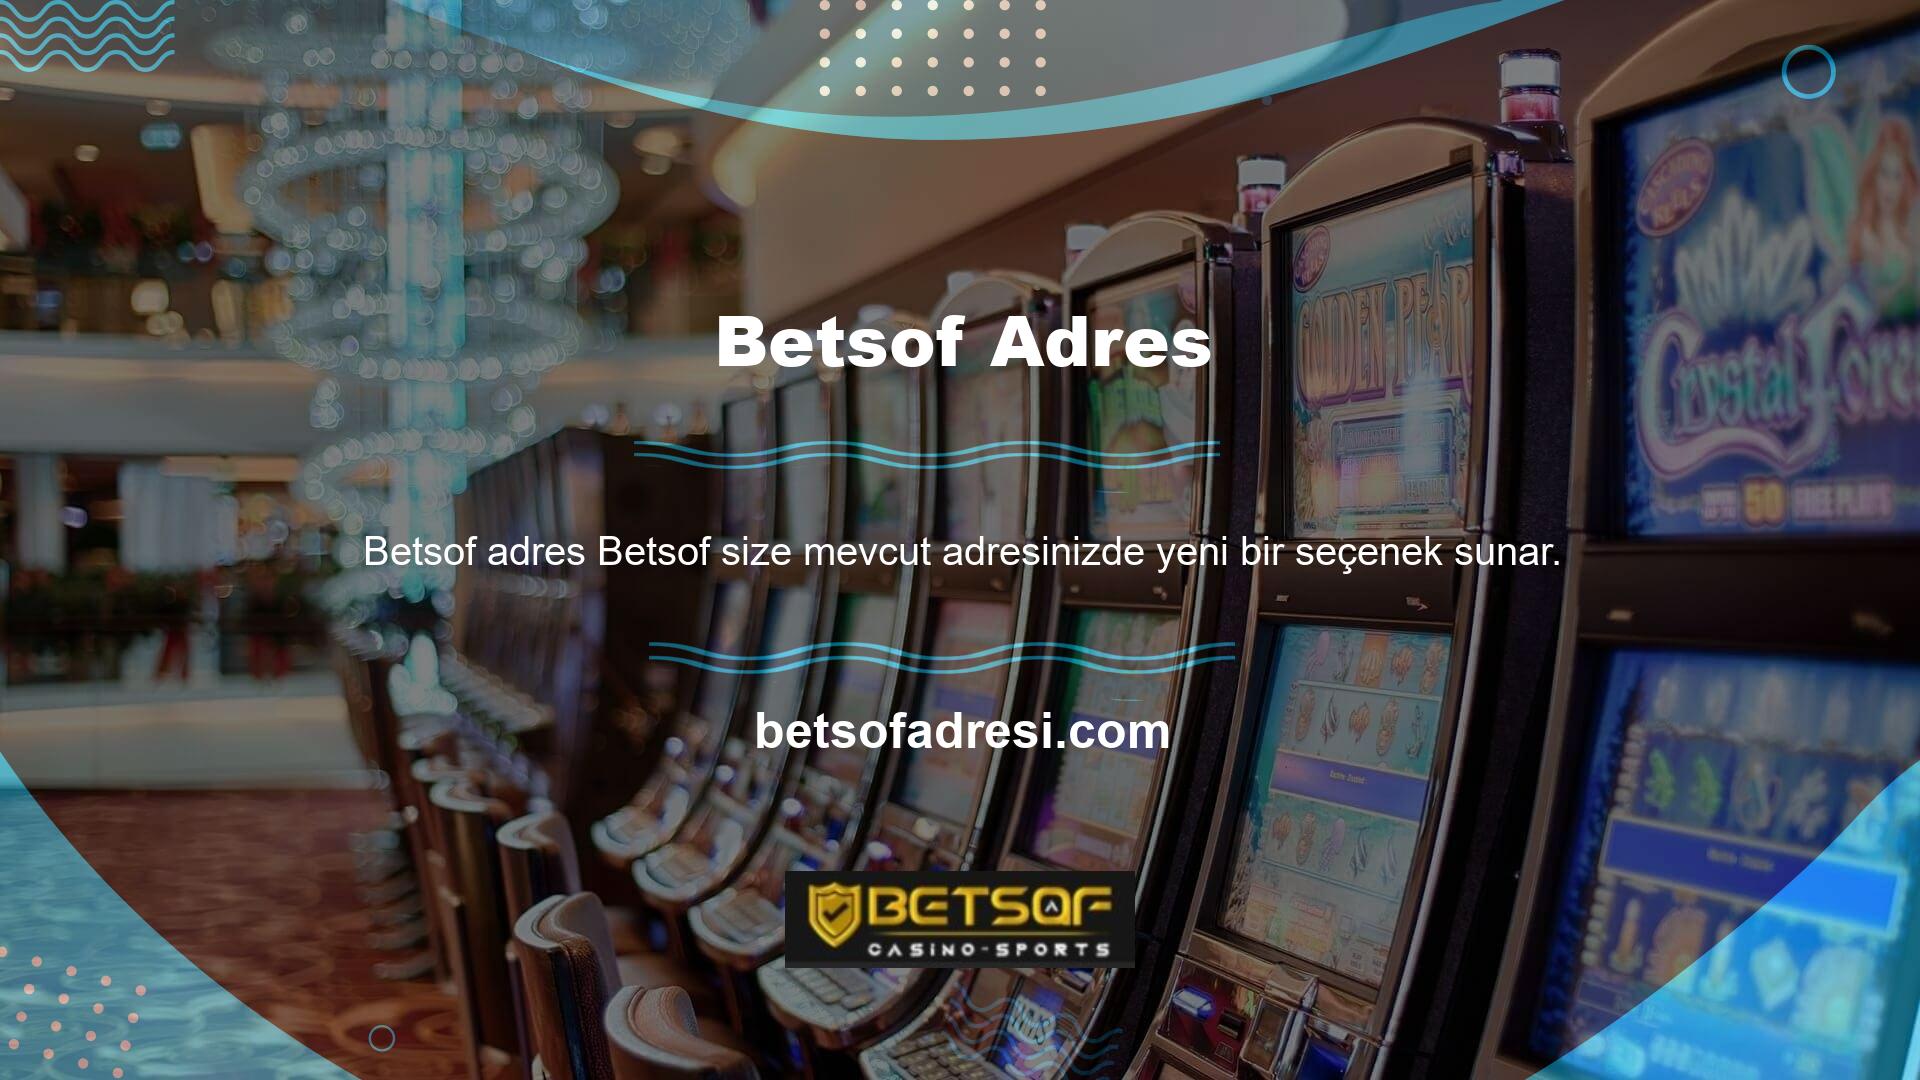 Betsof, casino bölümünde birden fazla sağlayıcı sunar